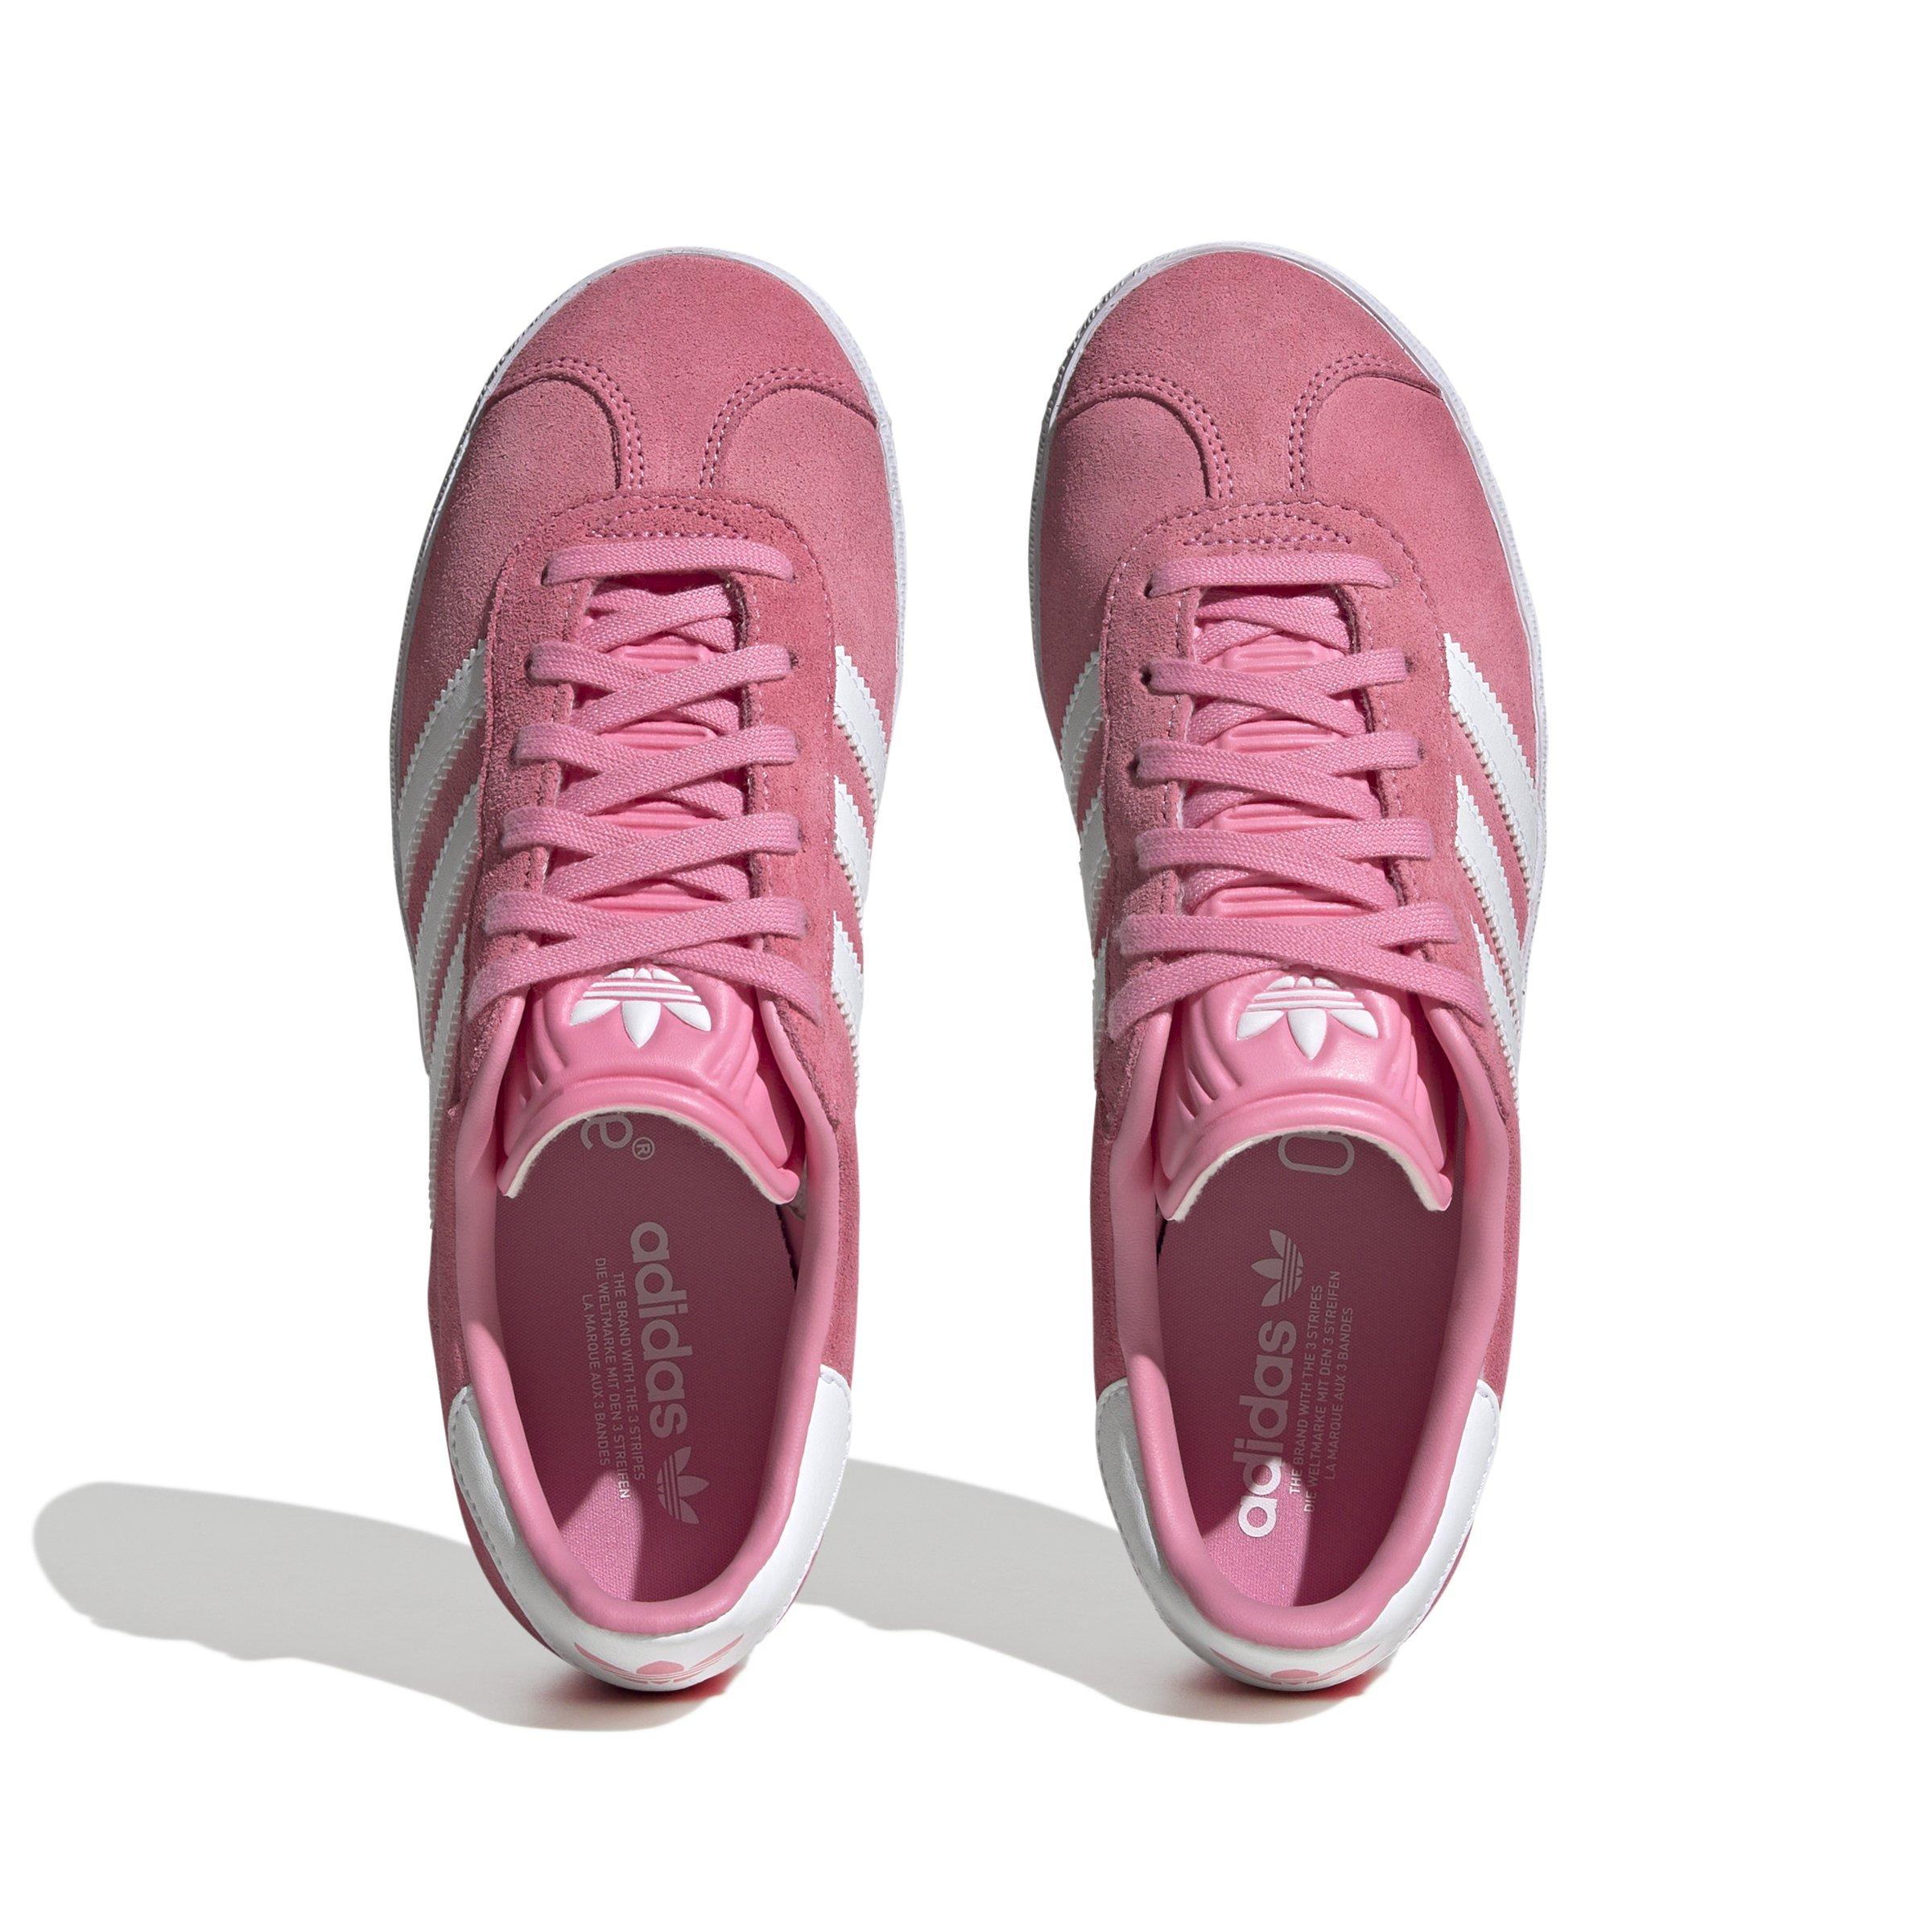 adidas gazelle white with pink stripes